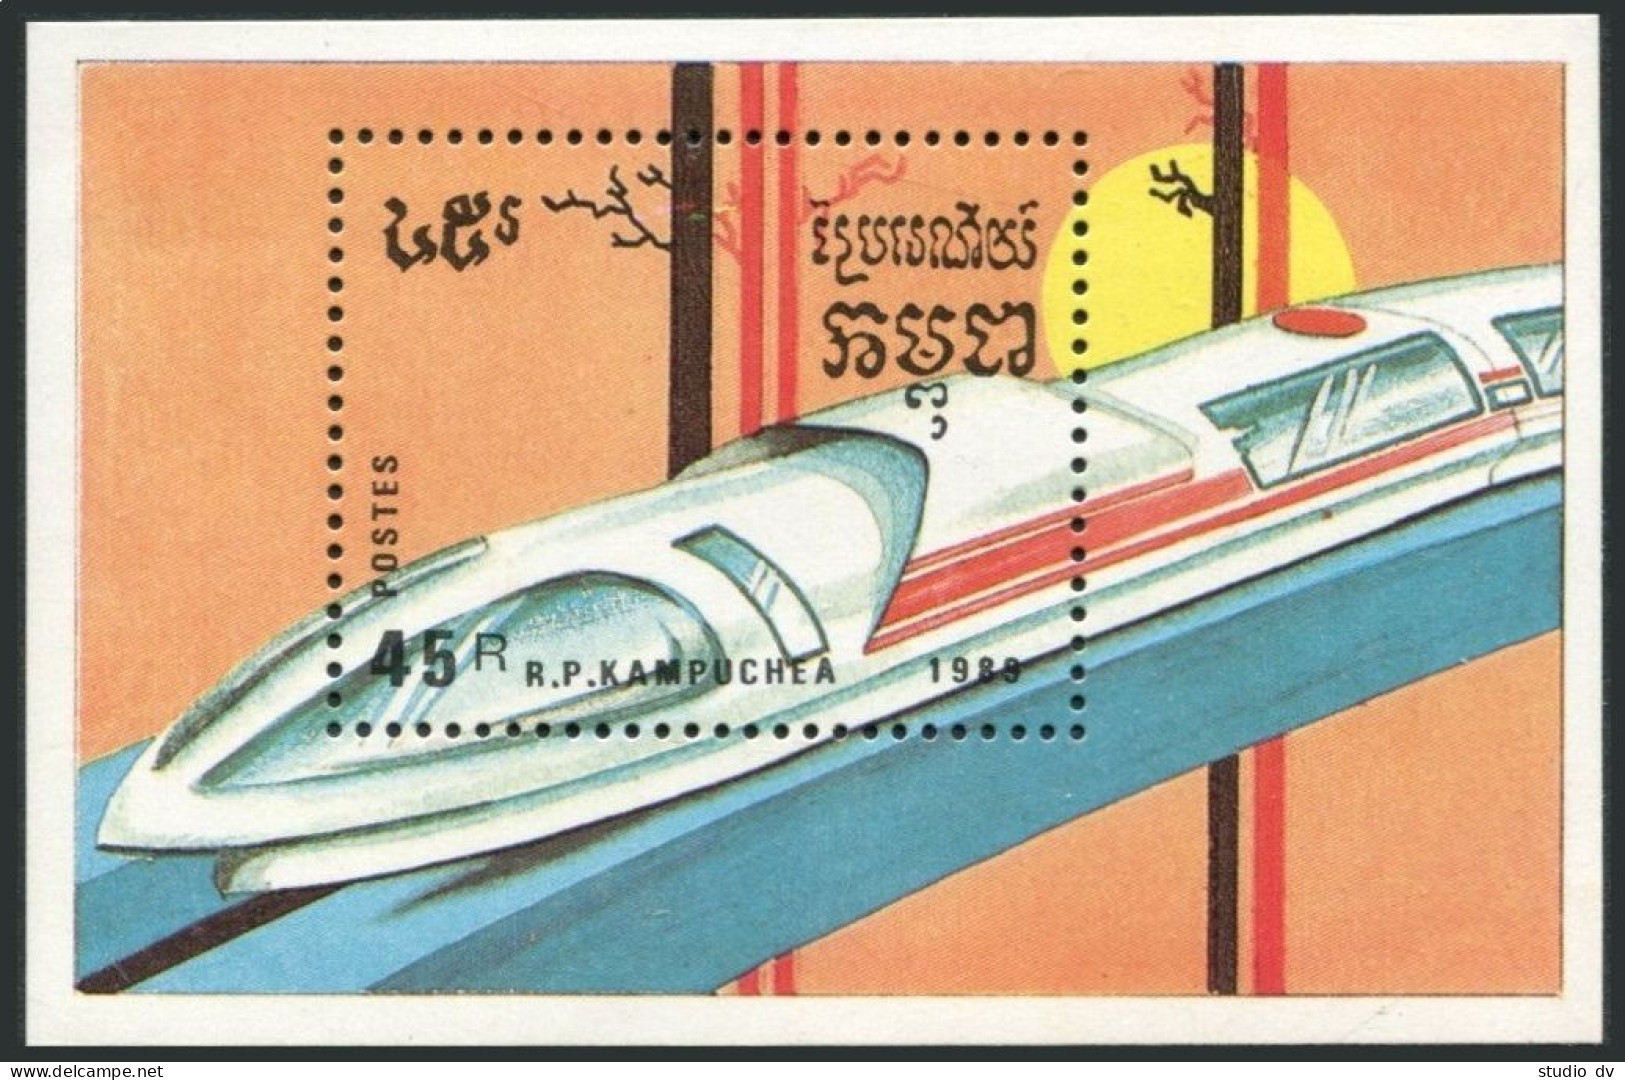 Cambodia 929-935,936,MNH.Michel 1007-1013,Bl.163. Trains,Locomotives 1989. - Cambogia